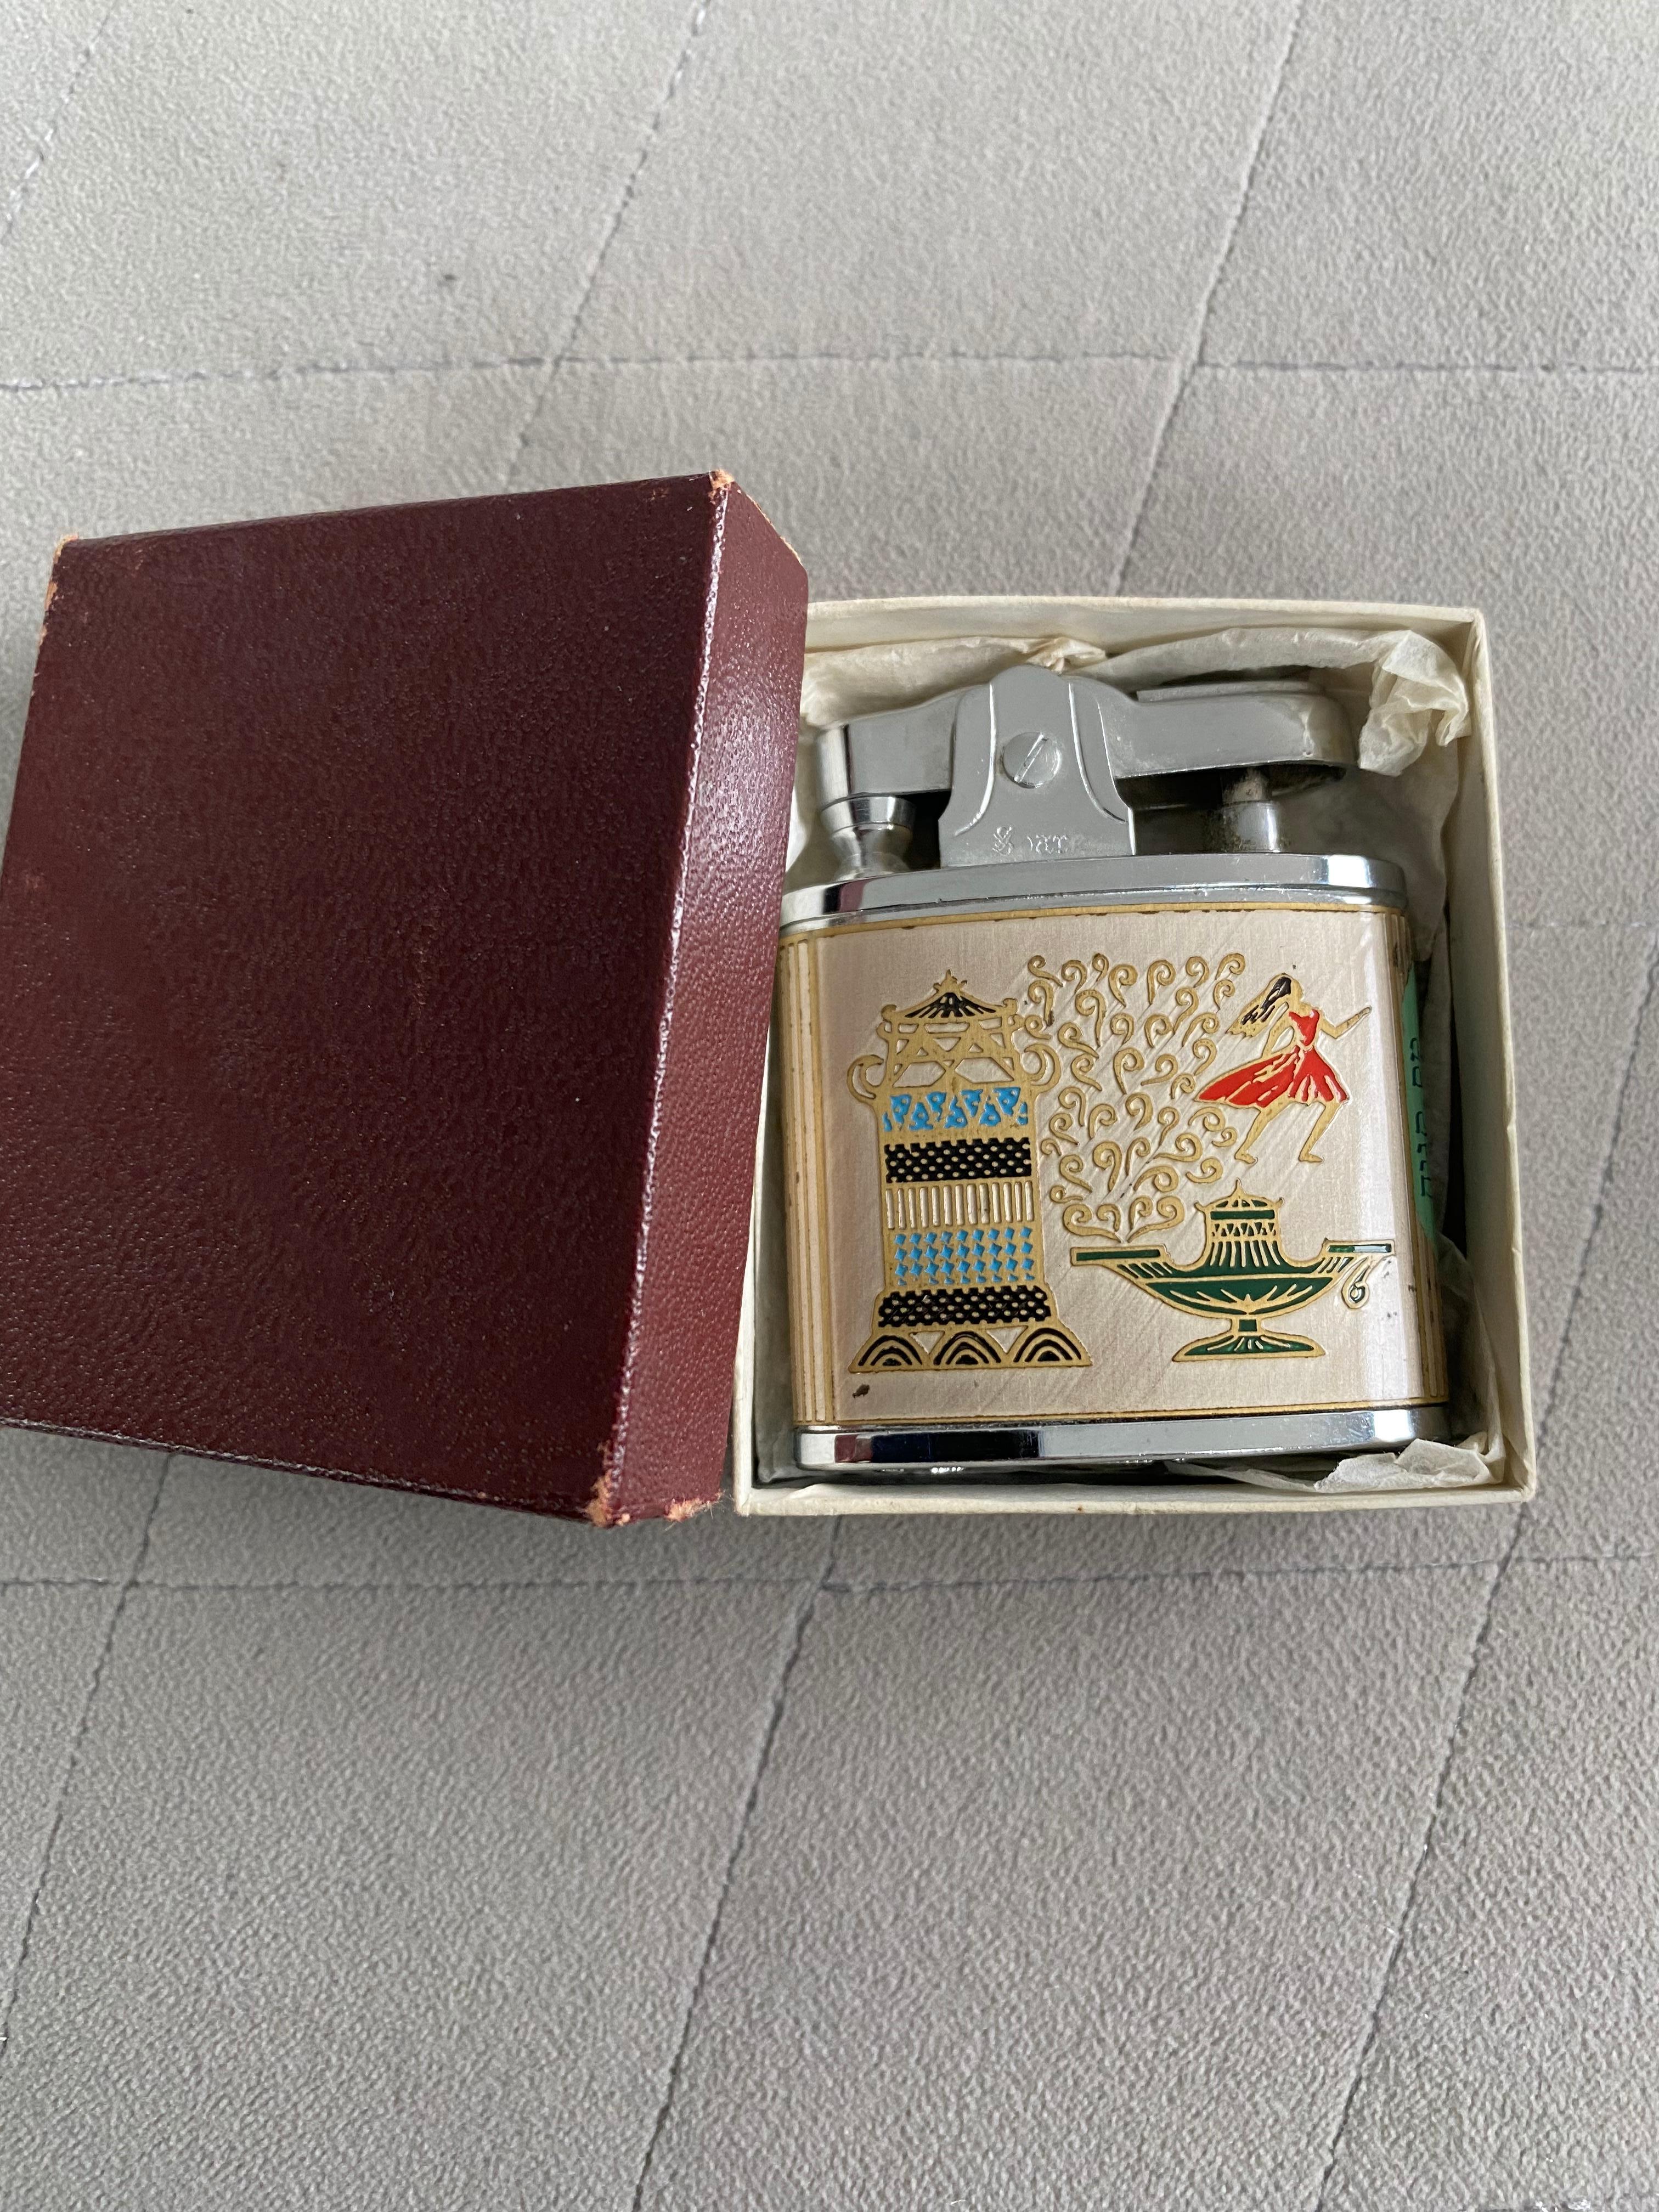 vintage japanese lighter